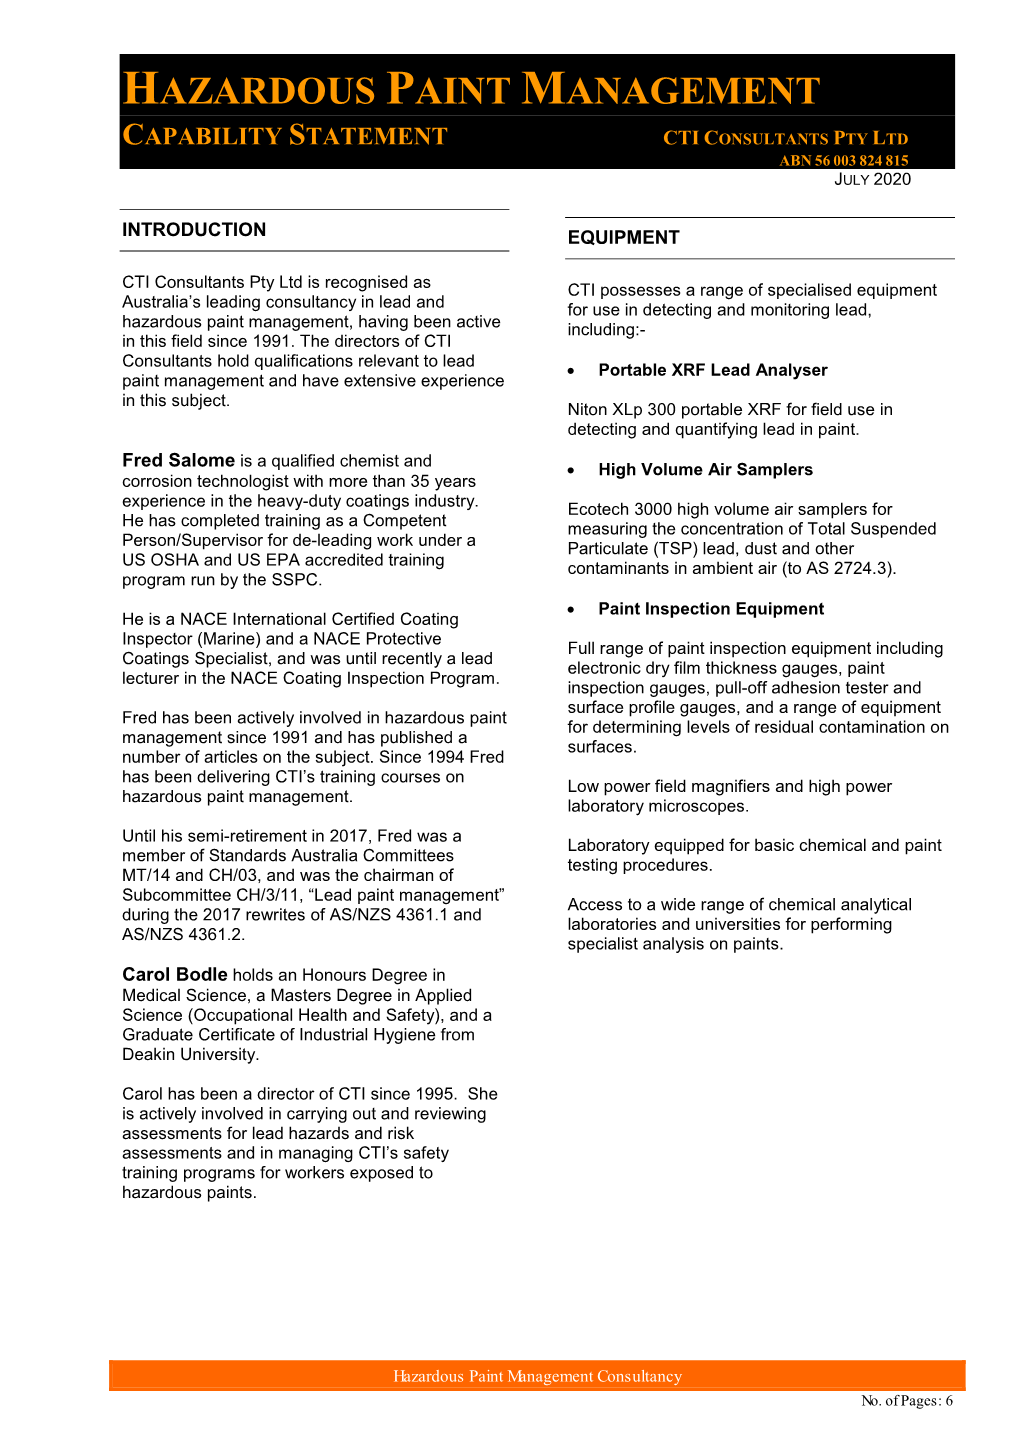 Hazardous Paint Management Capability Statement Cti Consultants Pty Ltd Abn 56 003 824 815 July 2020